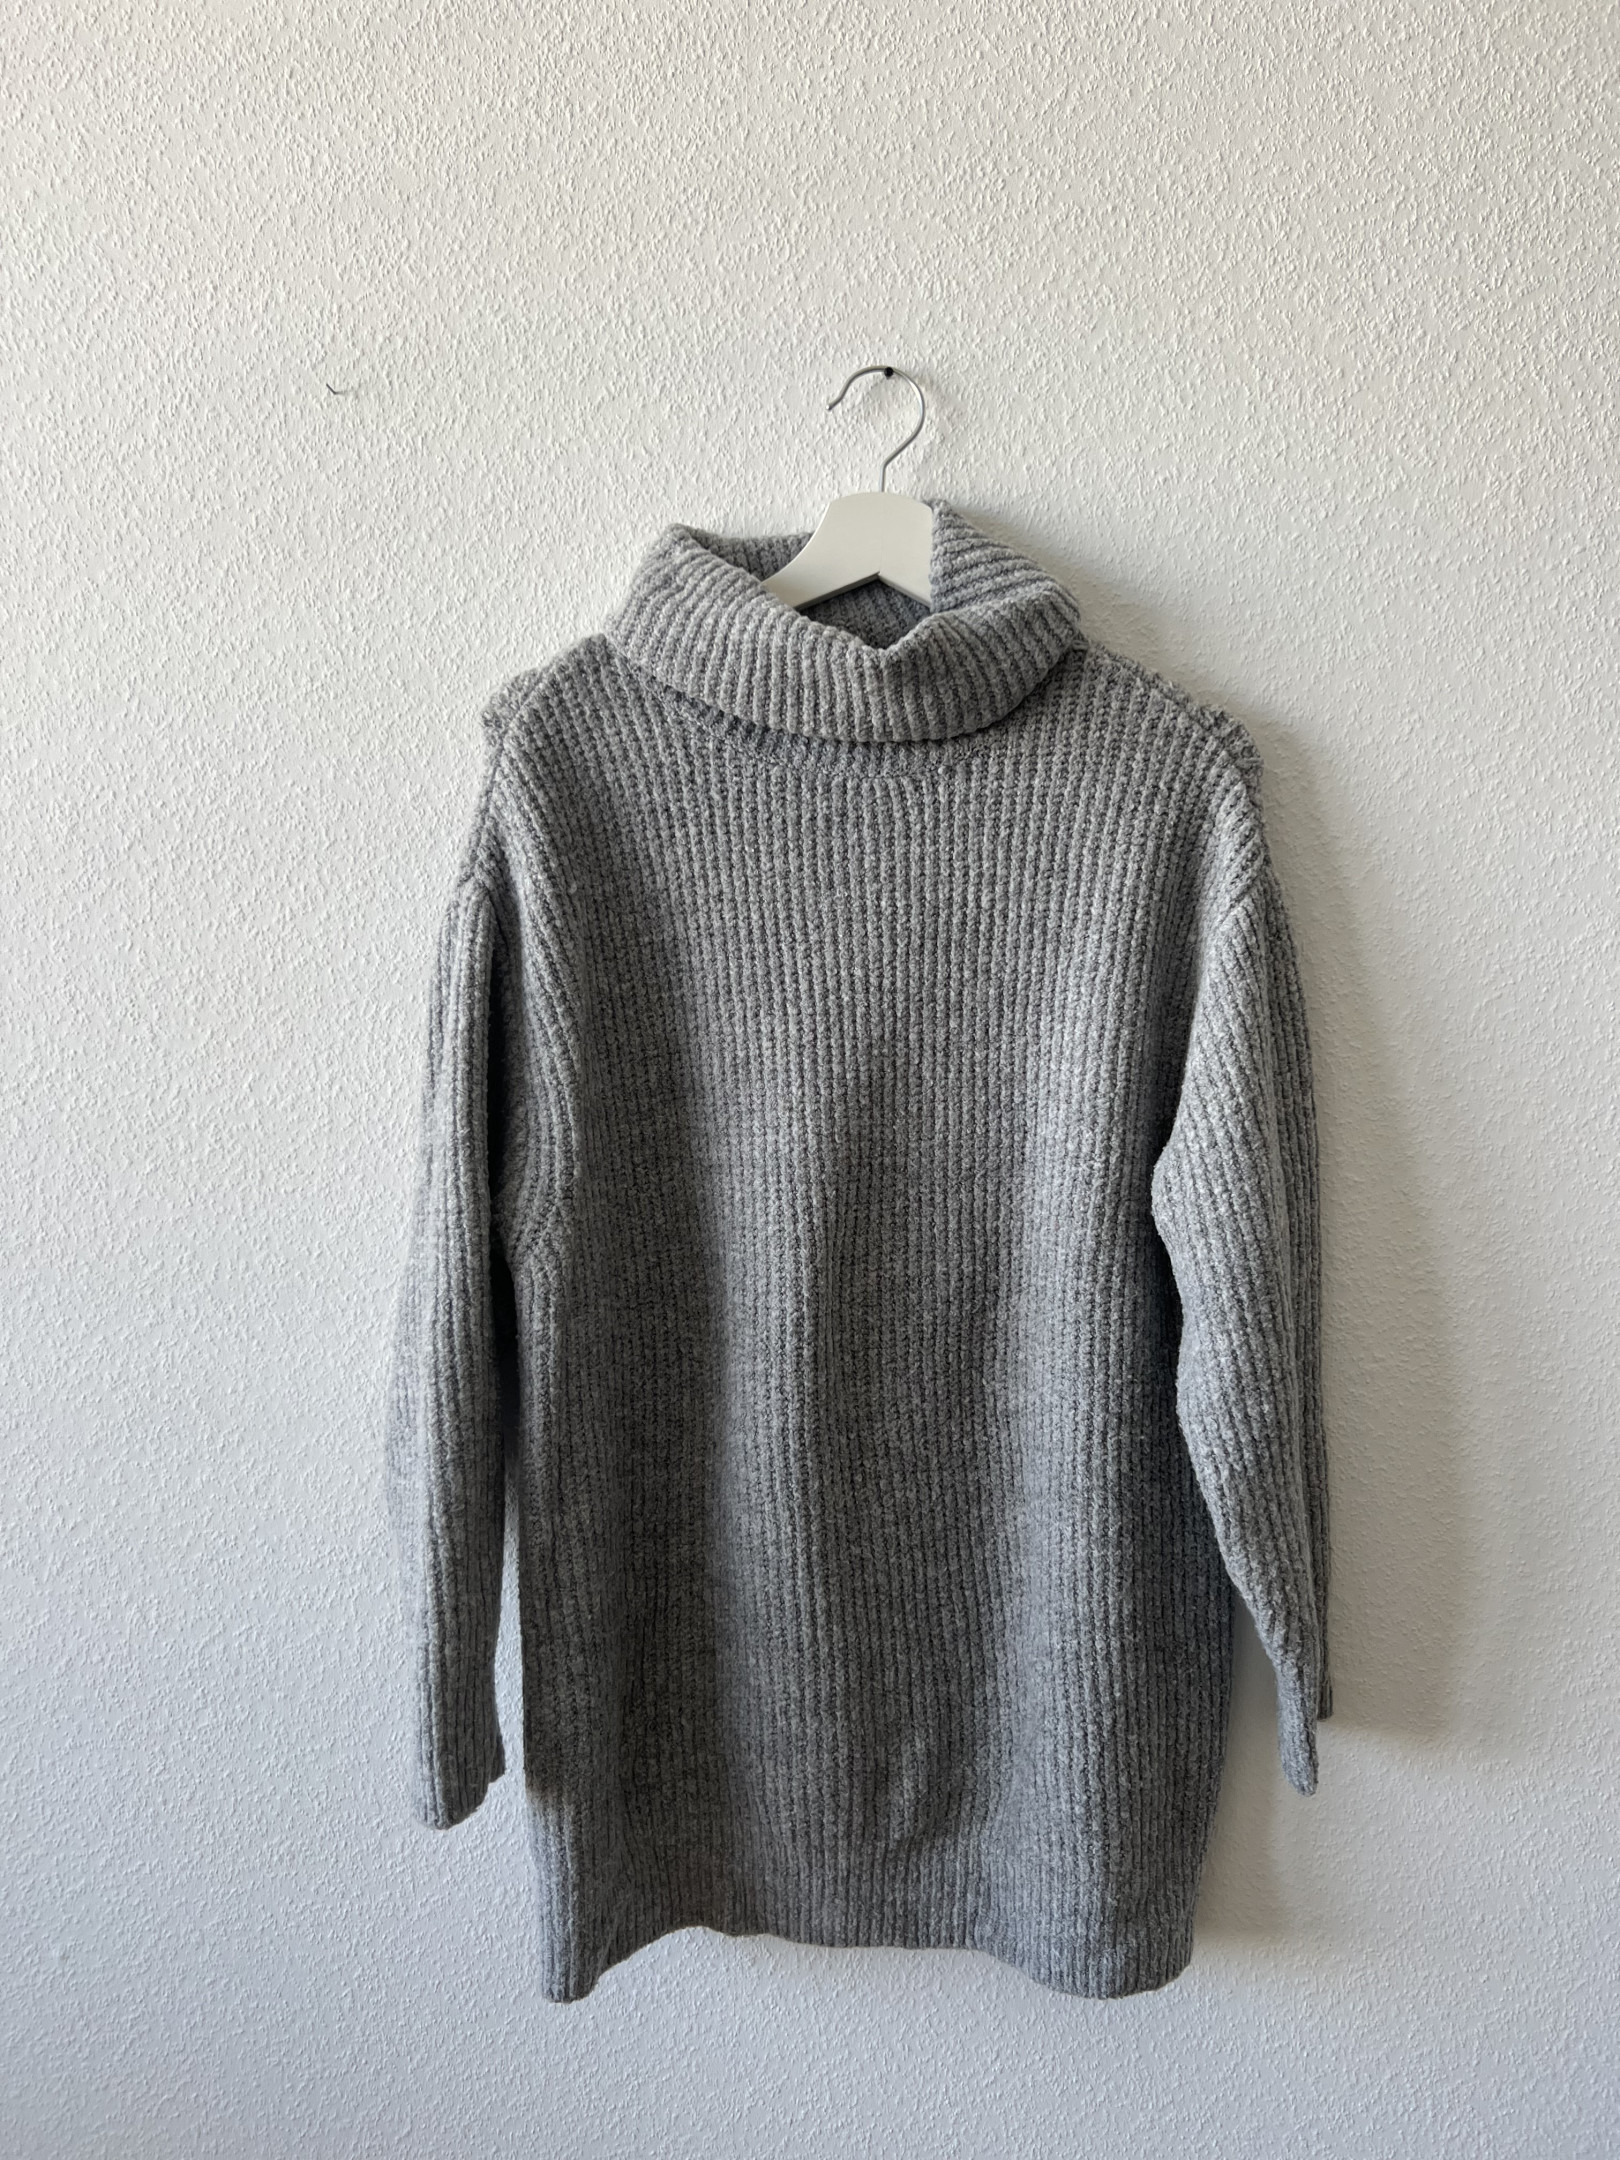 Grey wool jumper